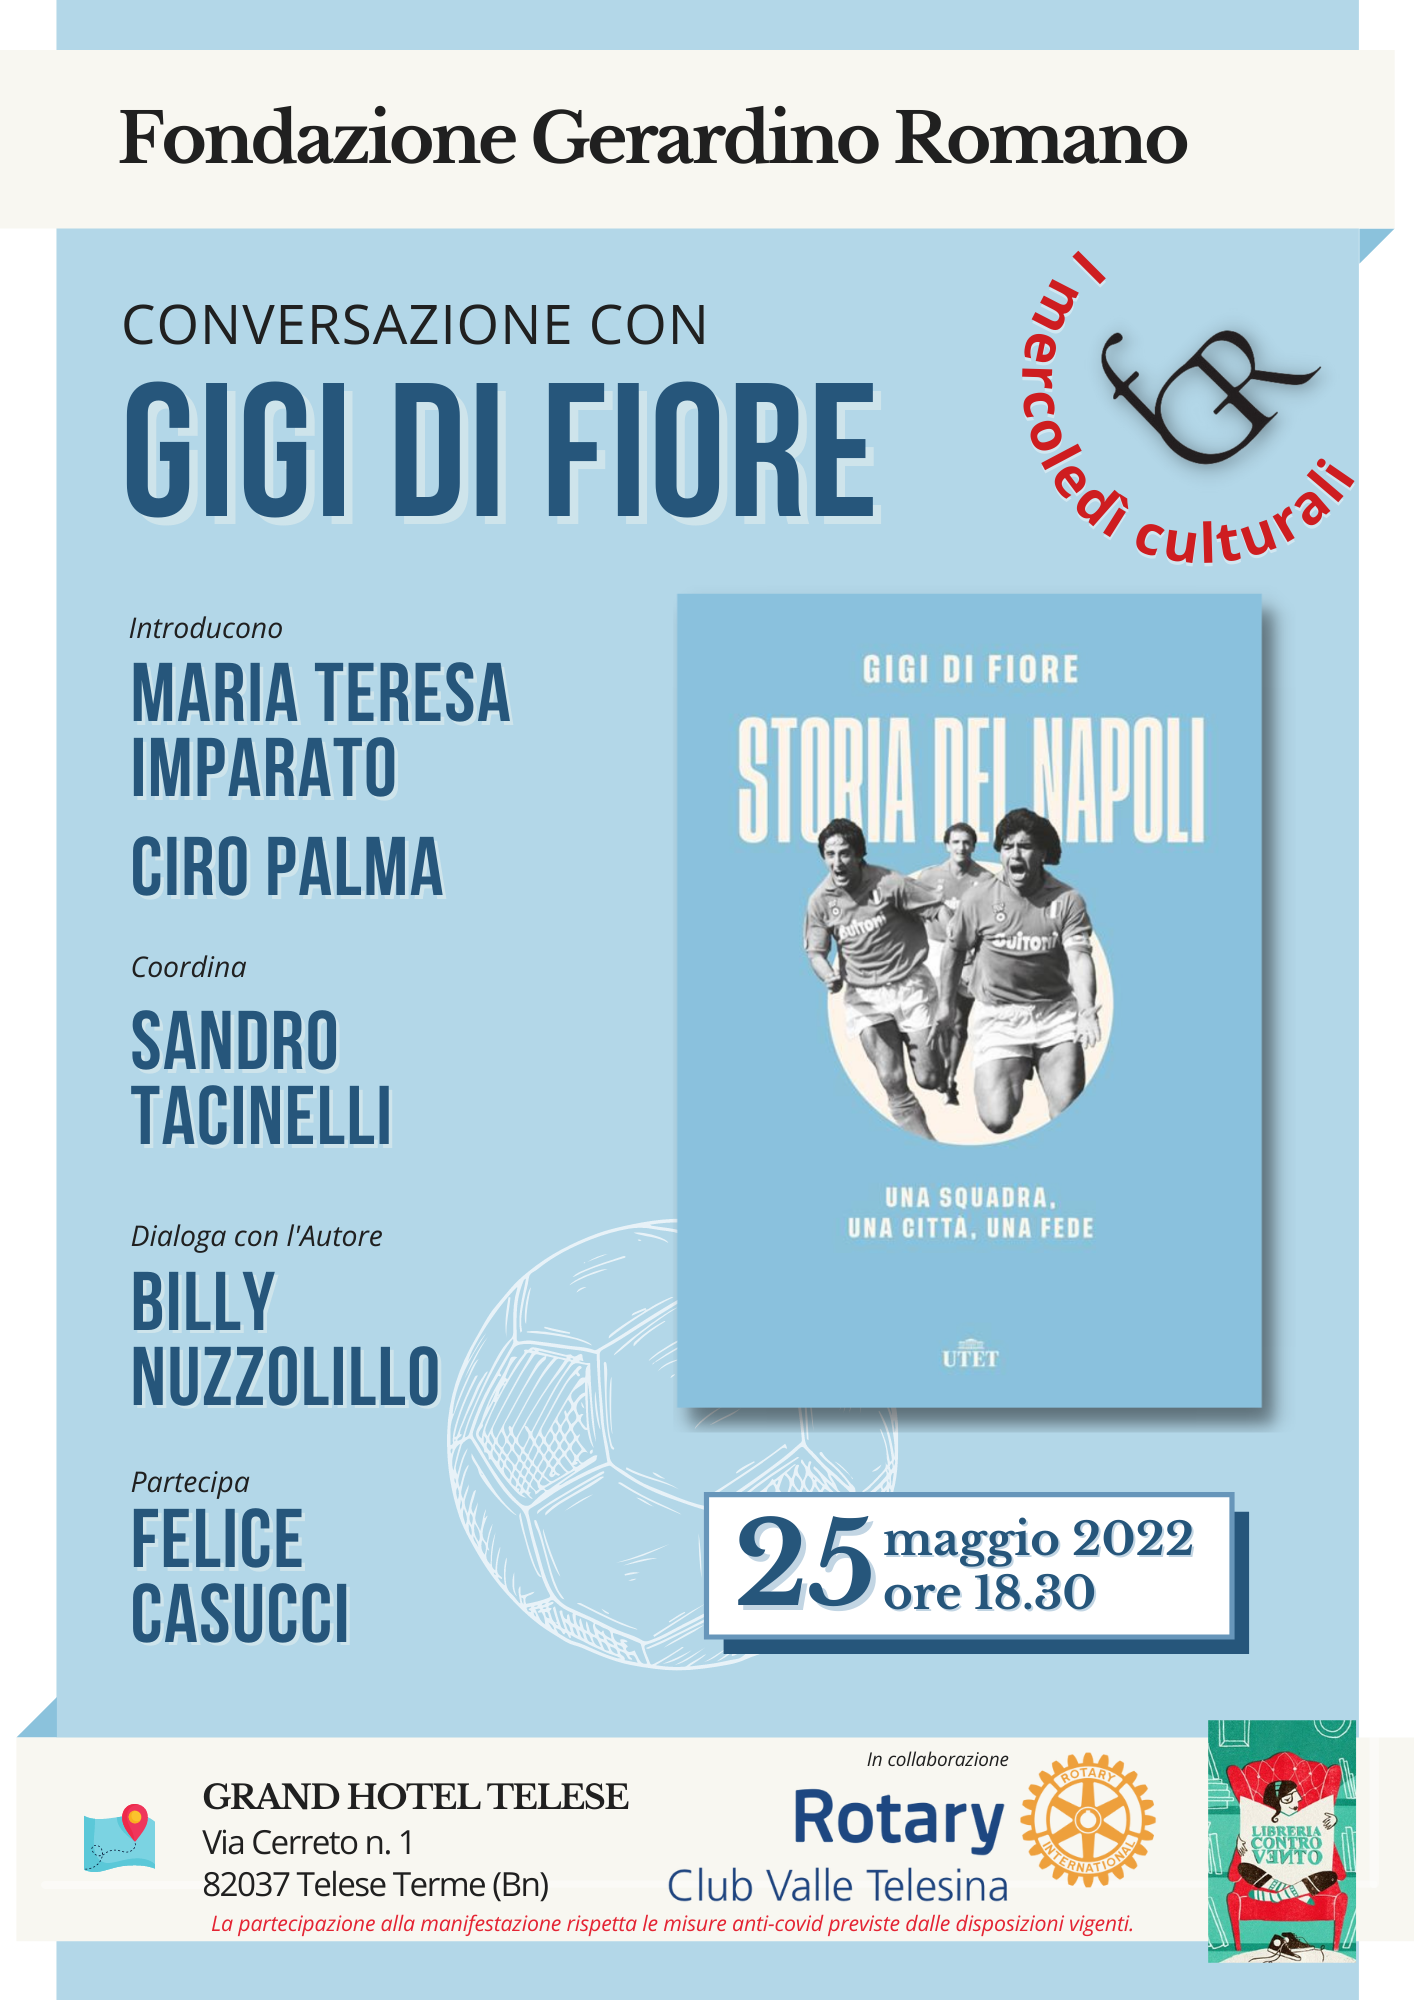 Alla Fondazione Romano Gigi Di Fiore presenta “Storia del Napoli”